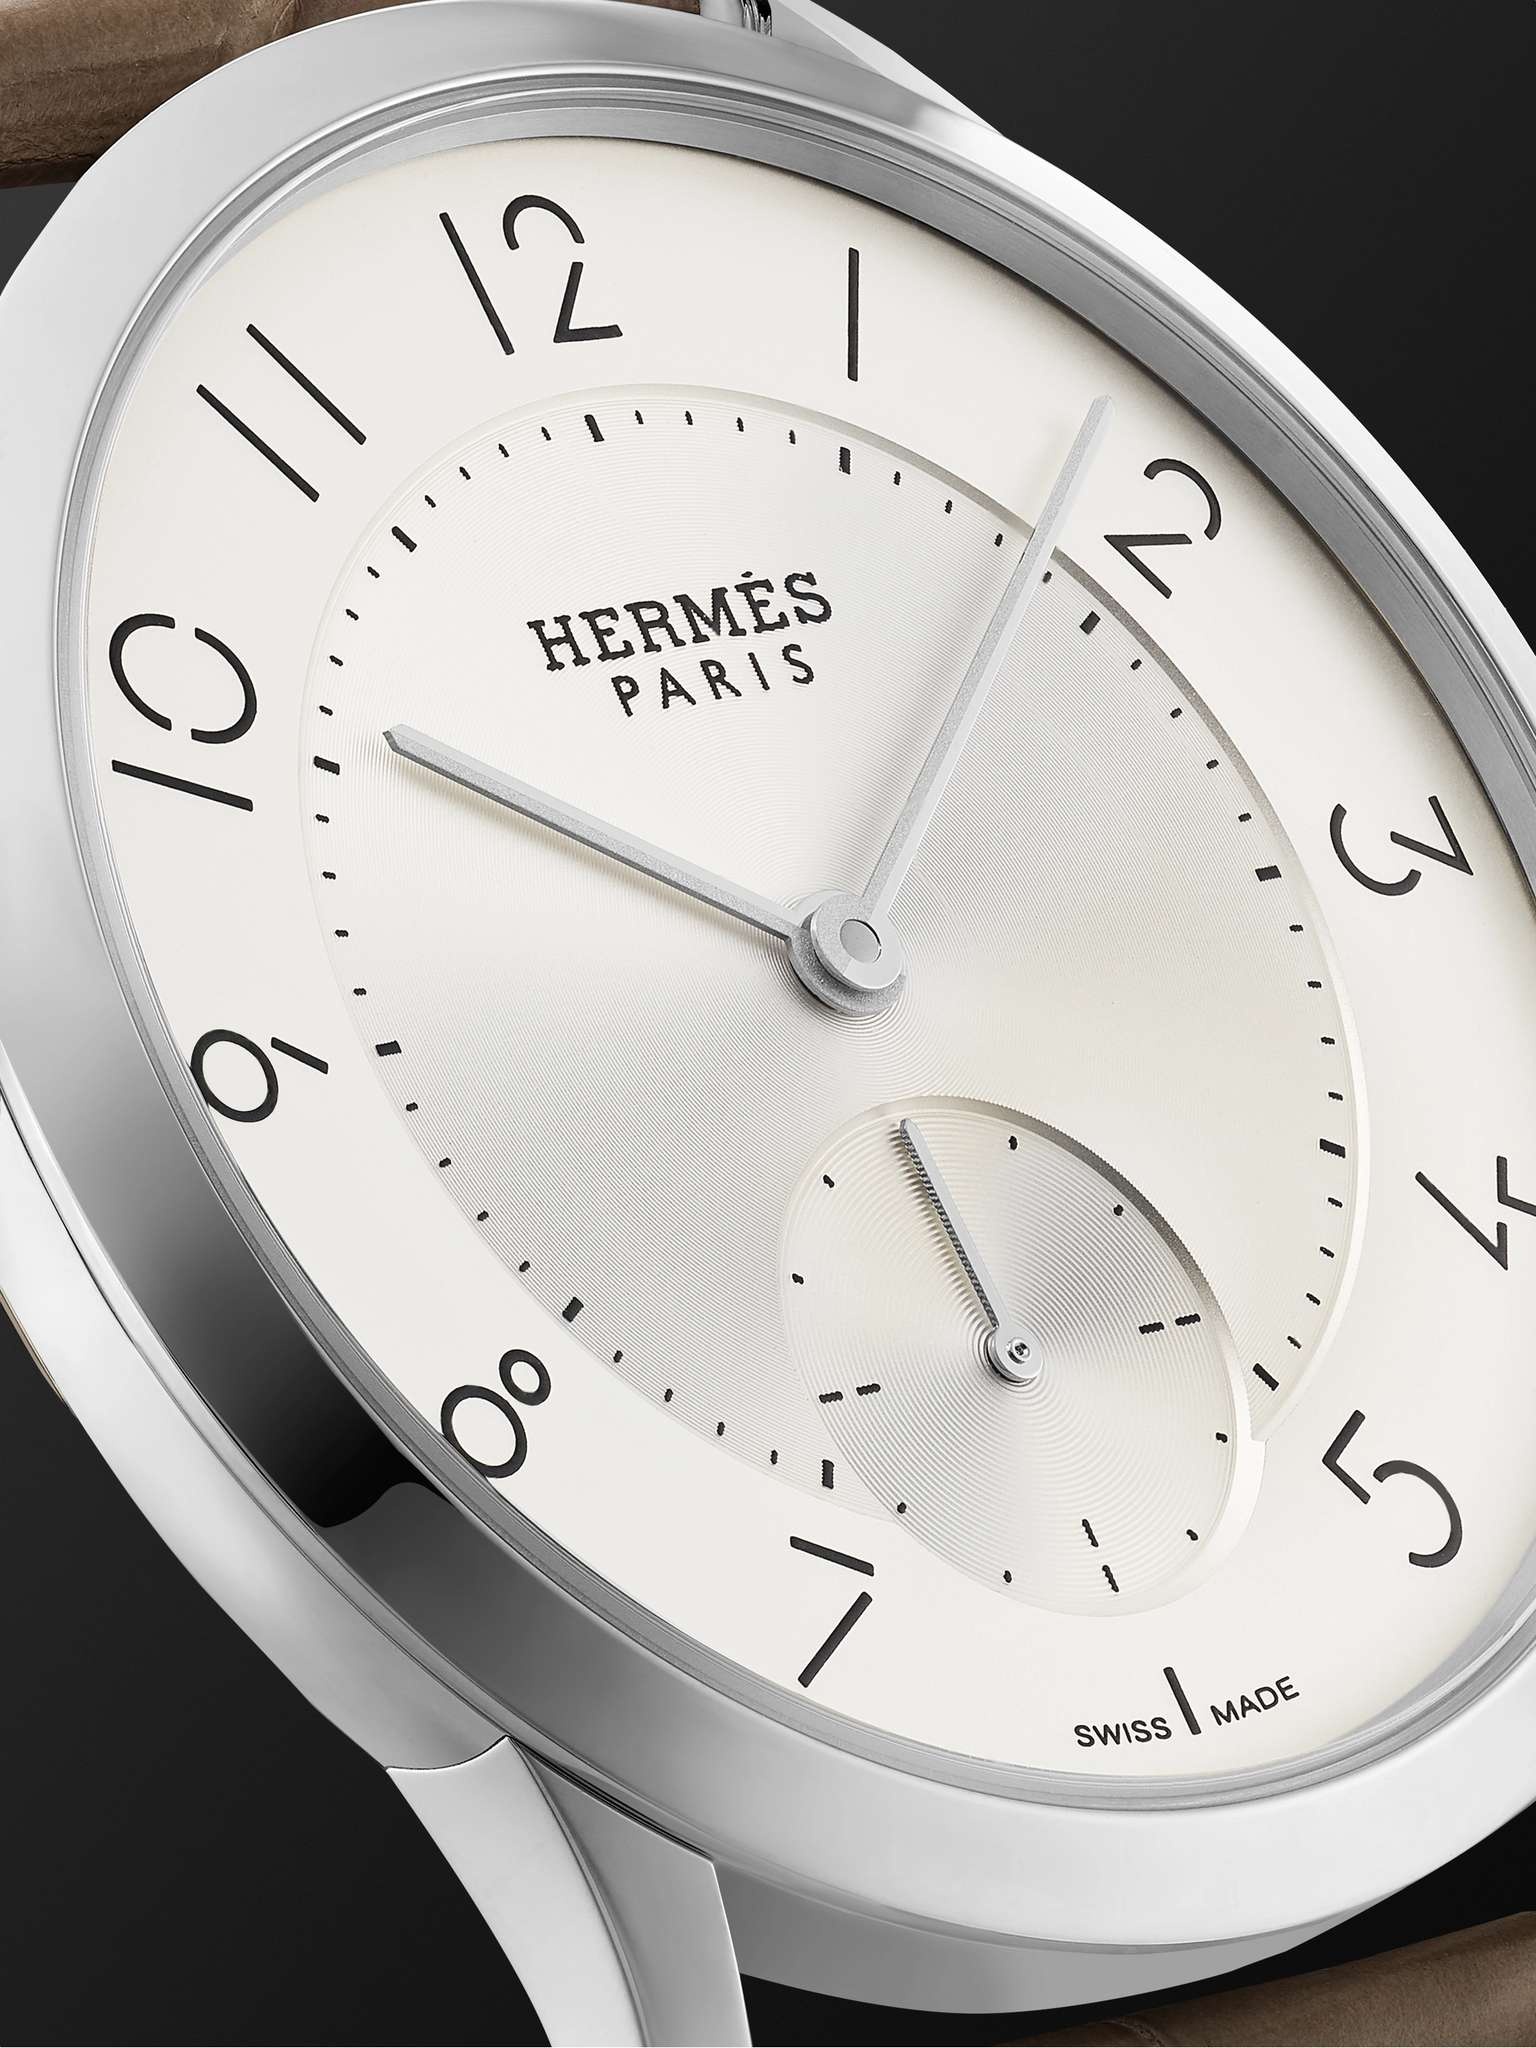 Slim d'Hermès Acier Automatic 39.5mm Stainless Steel and Alligator Watch, Ref. No. W045266WW00 - 6